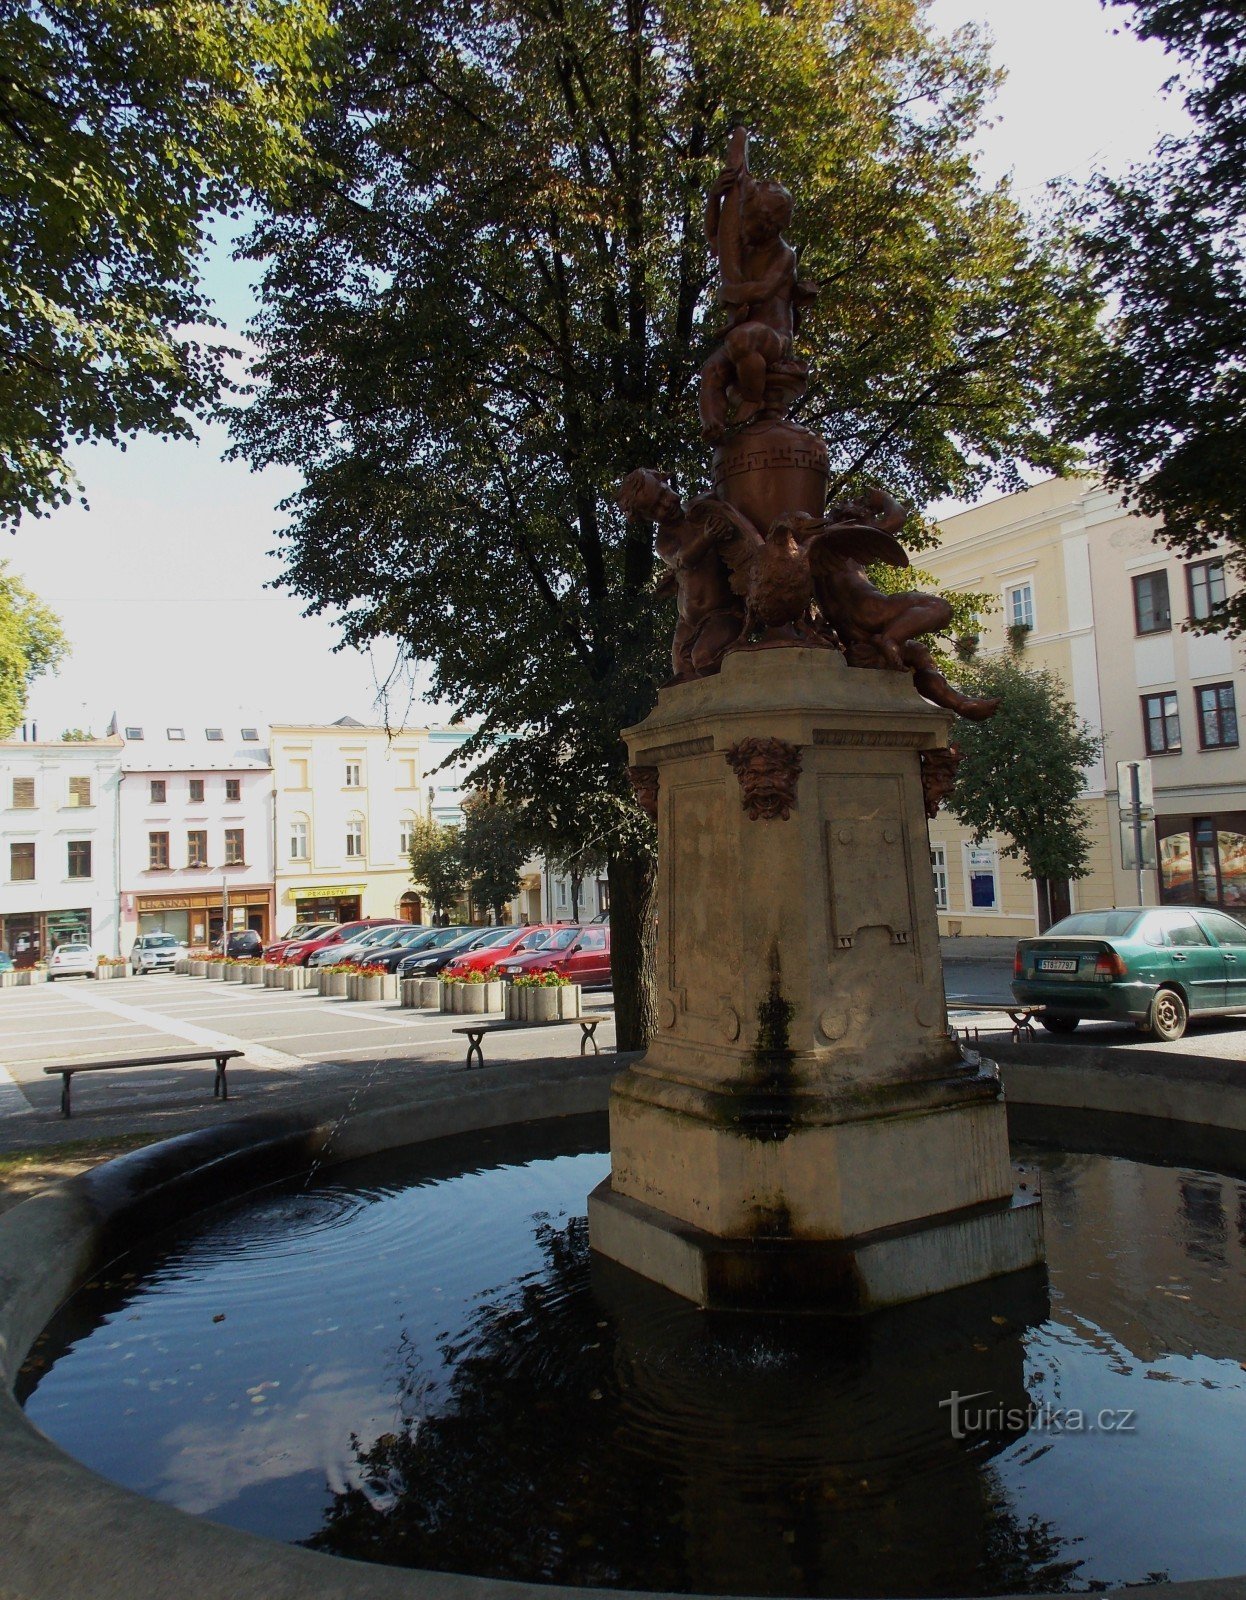 La fontana - la caratteristica dominante di Piazza Masaryk a Odary